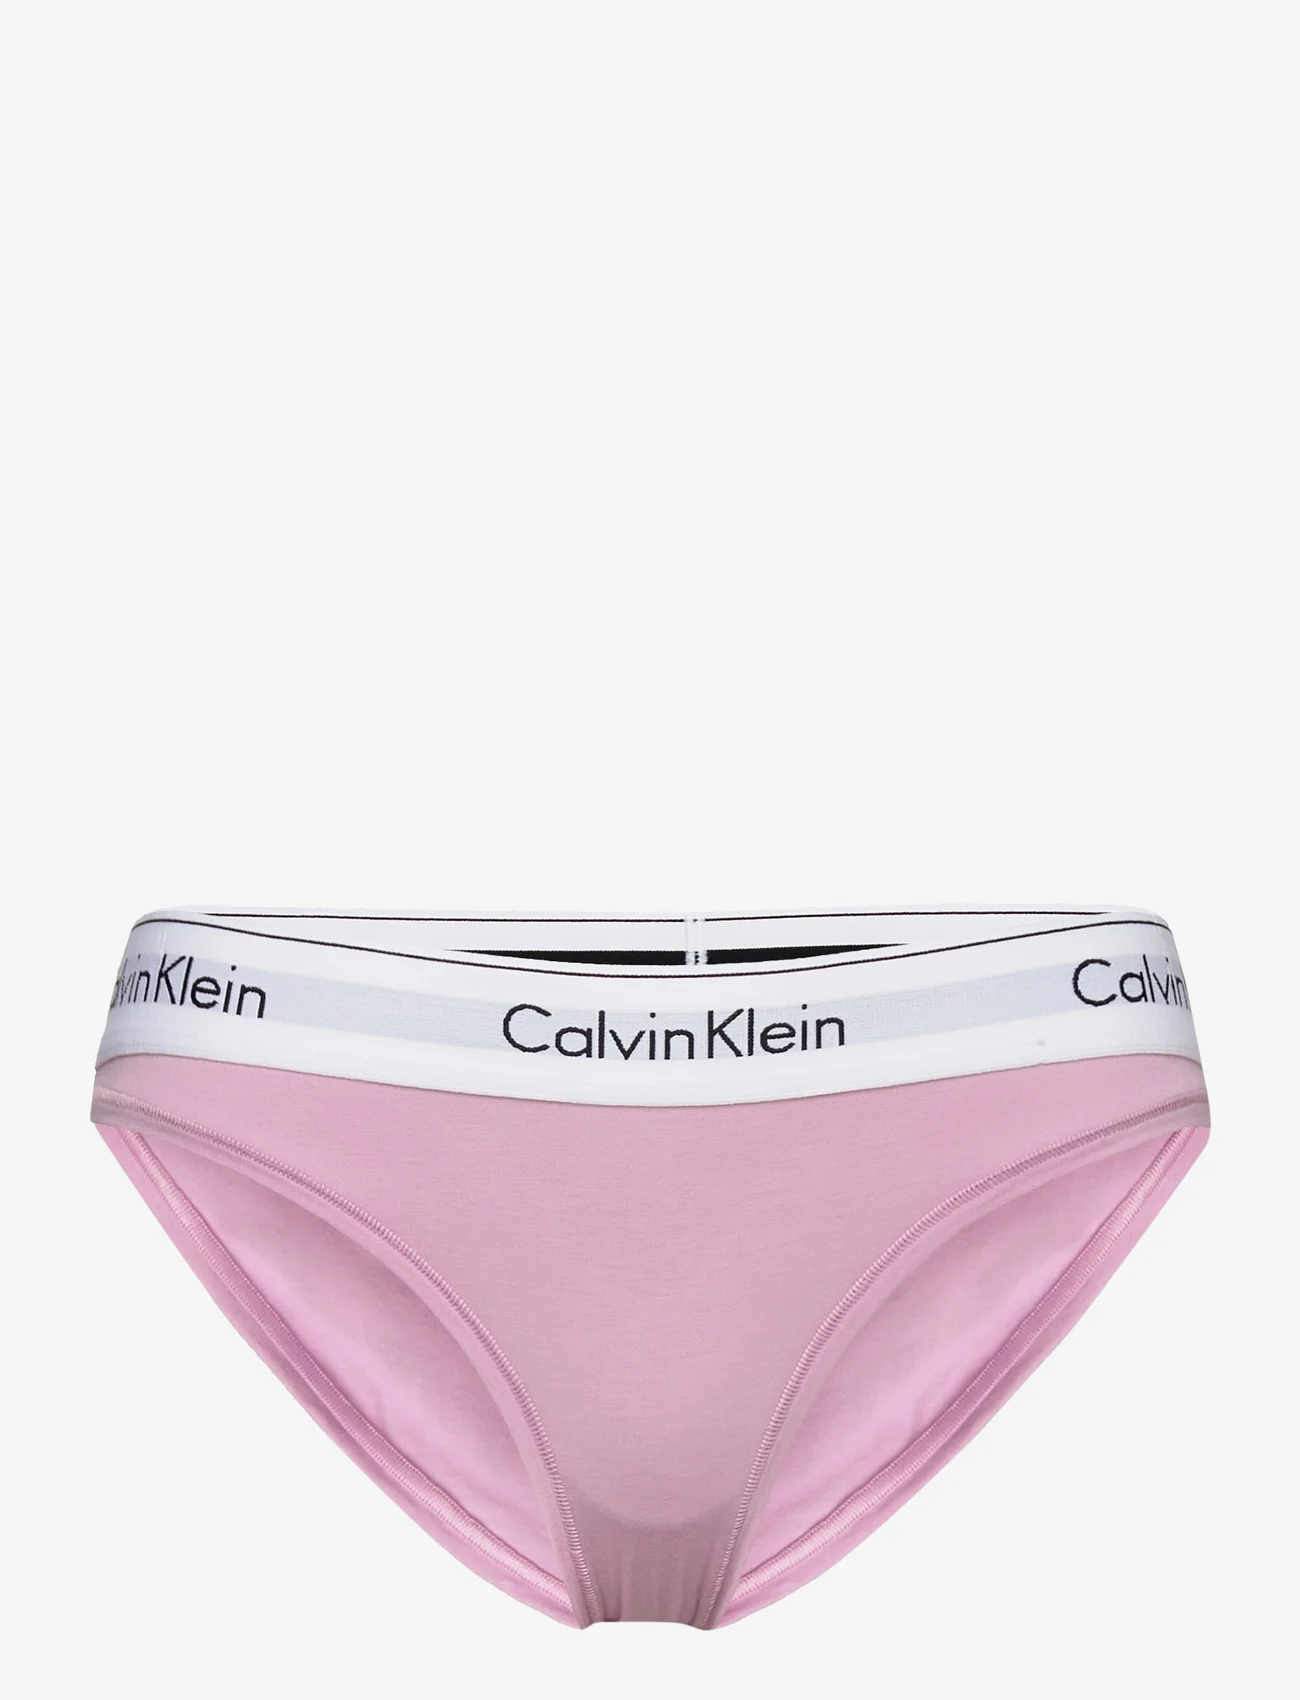 Calvin Klein - BIKINI - mažiausios kainos - mauve mist - 0